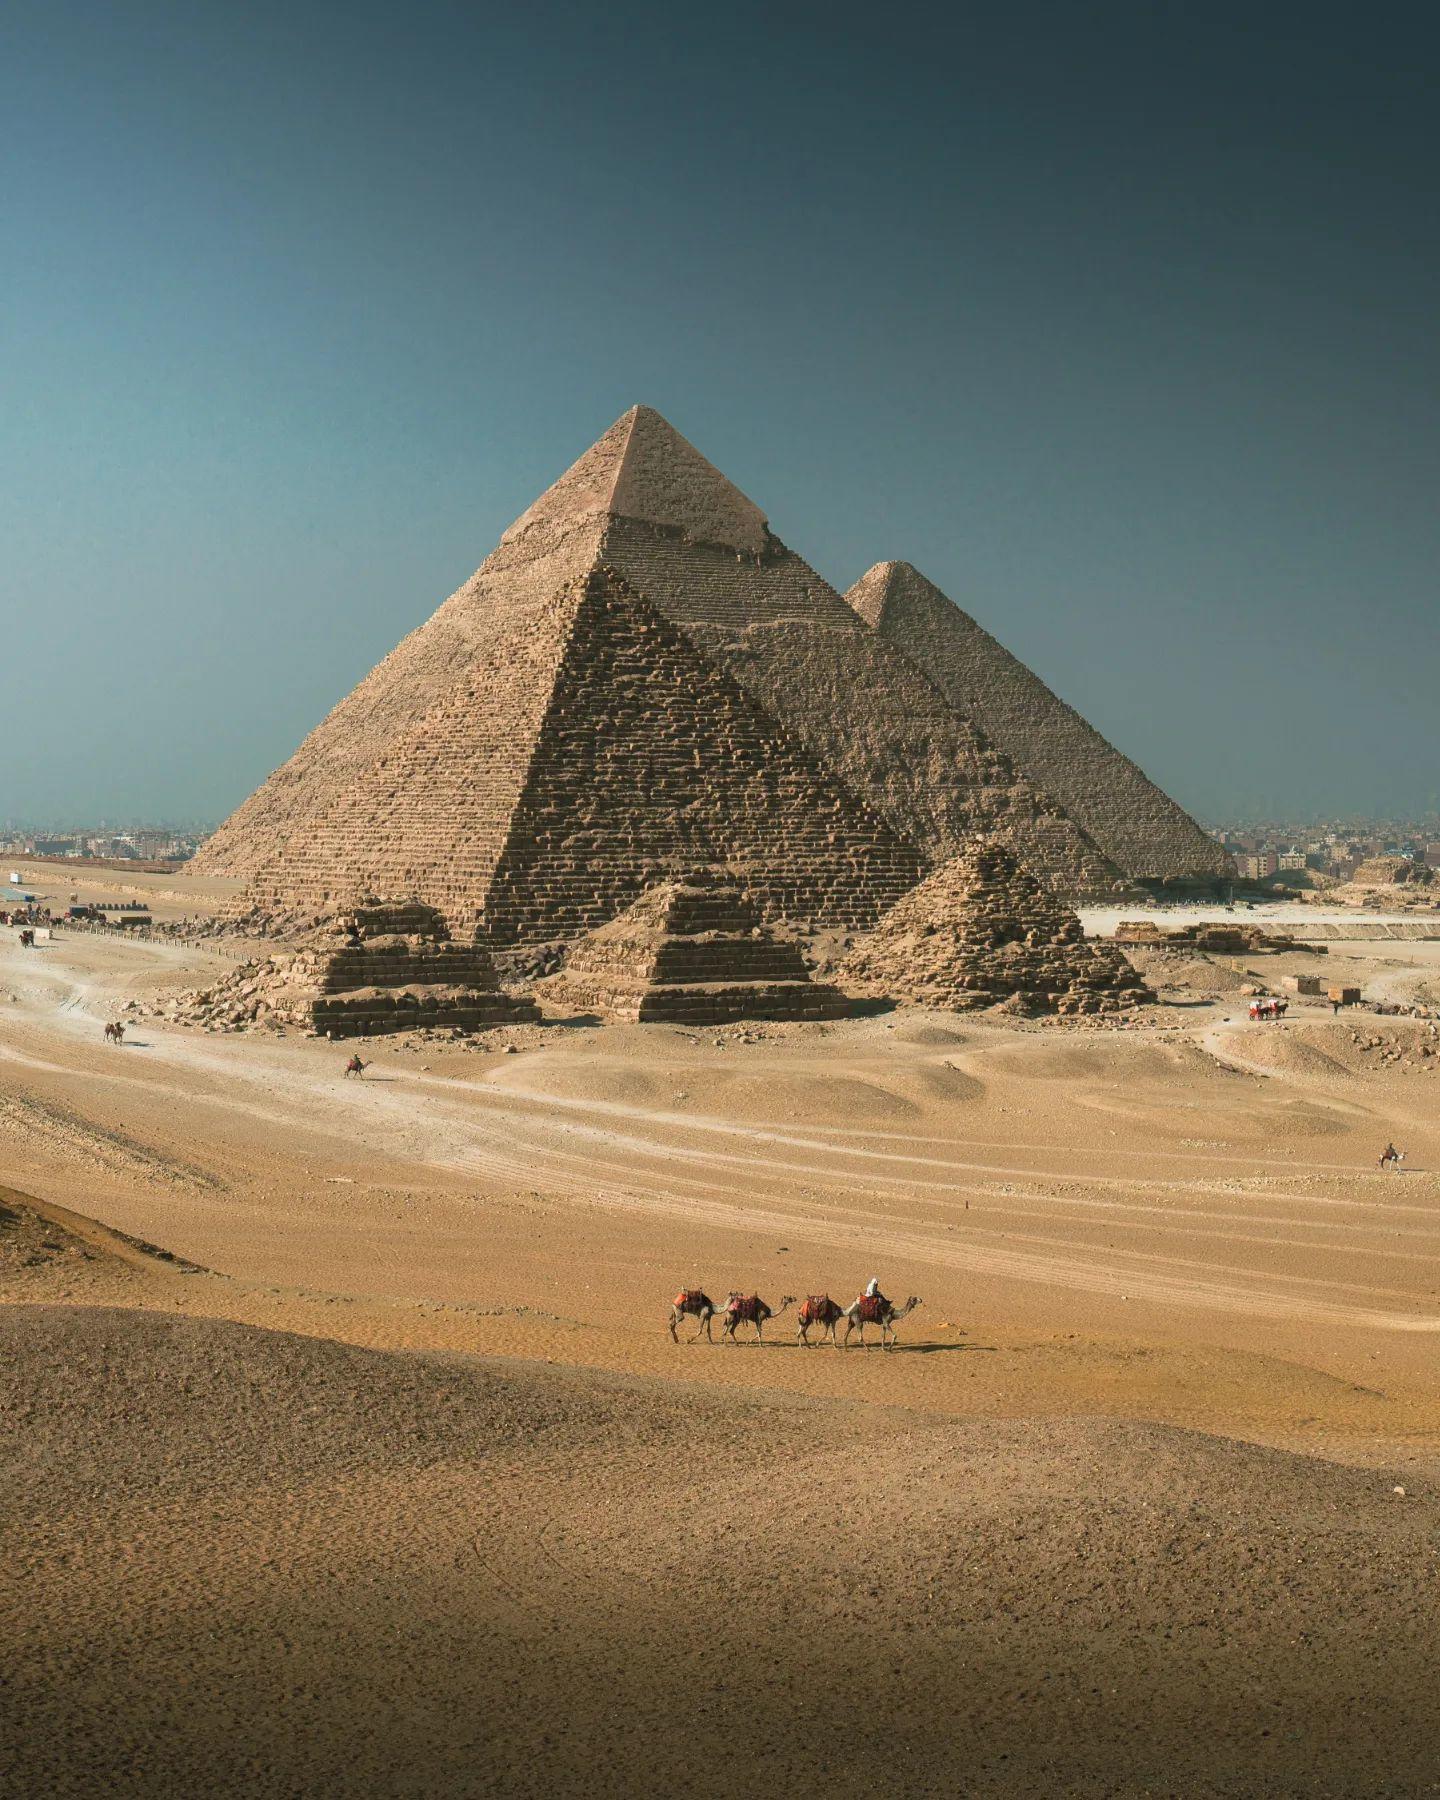  吉萨金字塔，来自摄影师STEPHEN GOLLAN。 